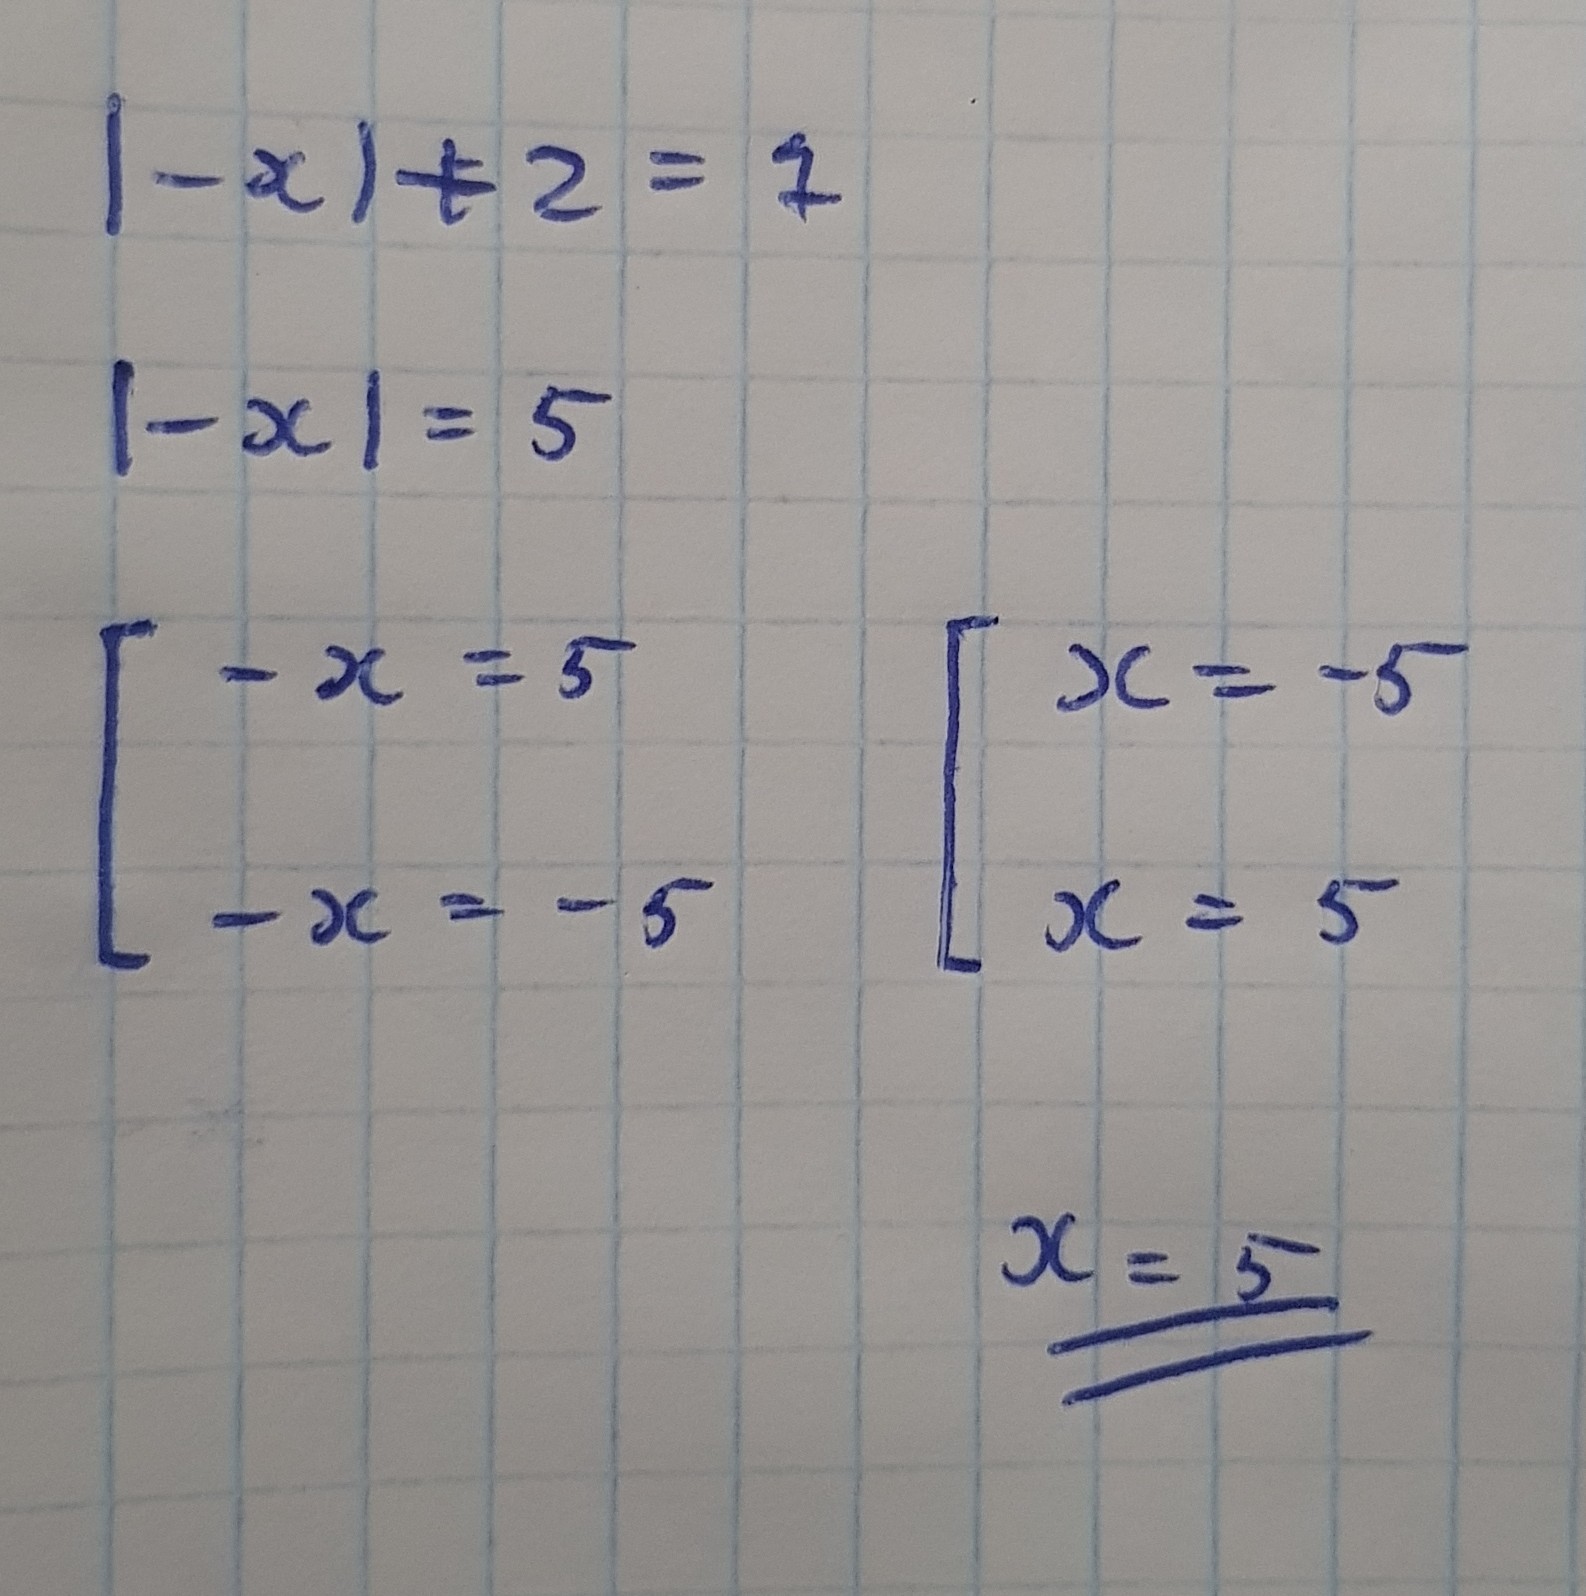 Найдите положительное решение уравнения. Найдите положительное решение уравнения |-х|+2=7. Найдите положительное решение уравнения -x +2 7. Найди положительное решение уравнения |-х|+2=7.